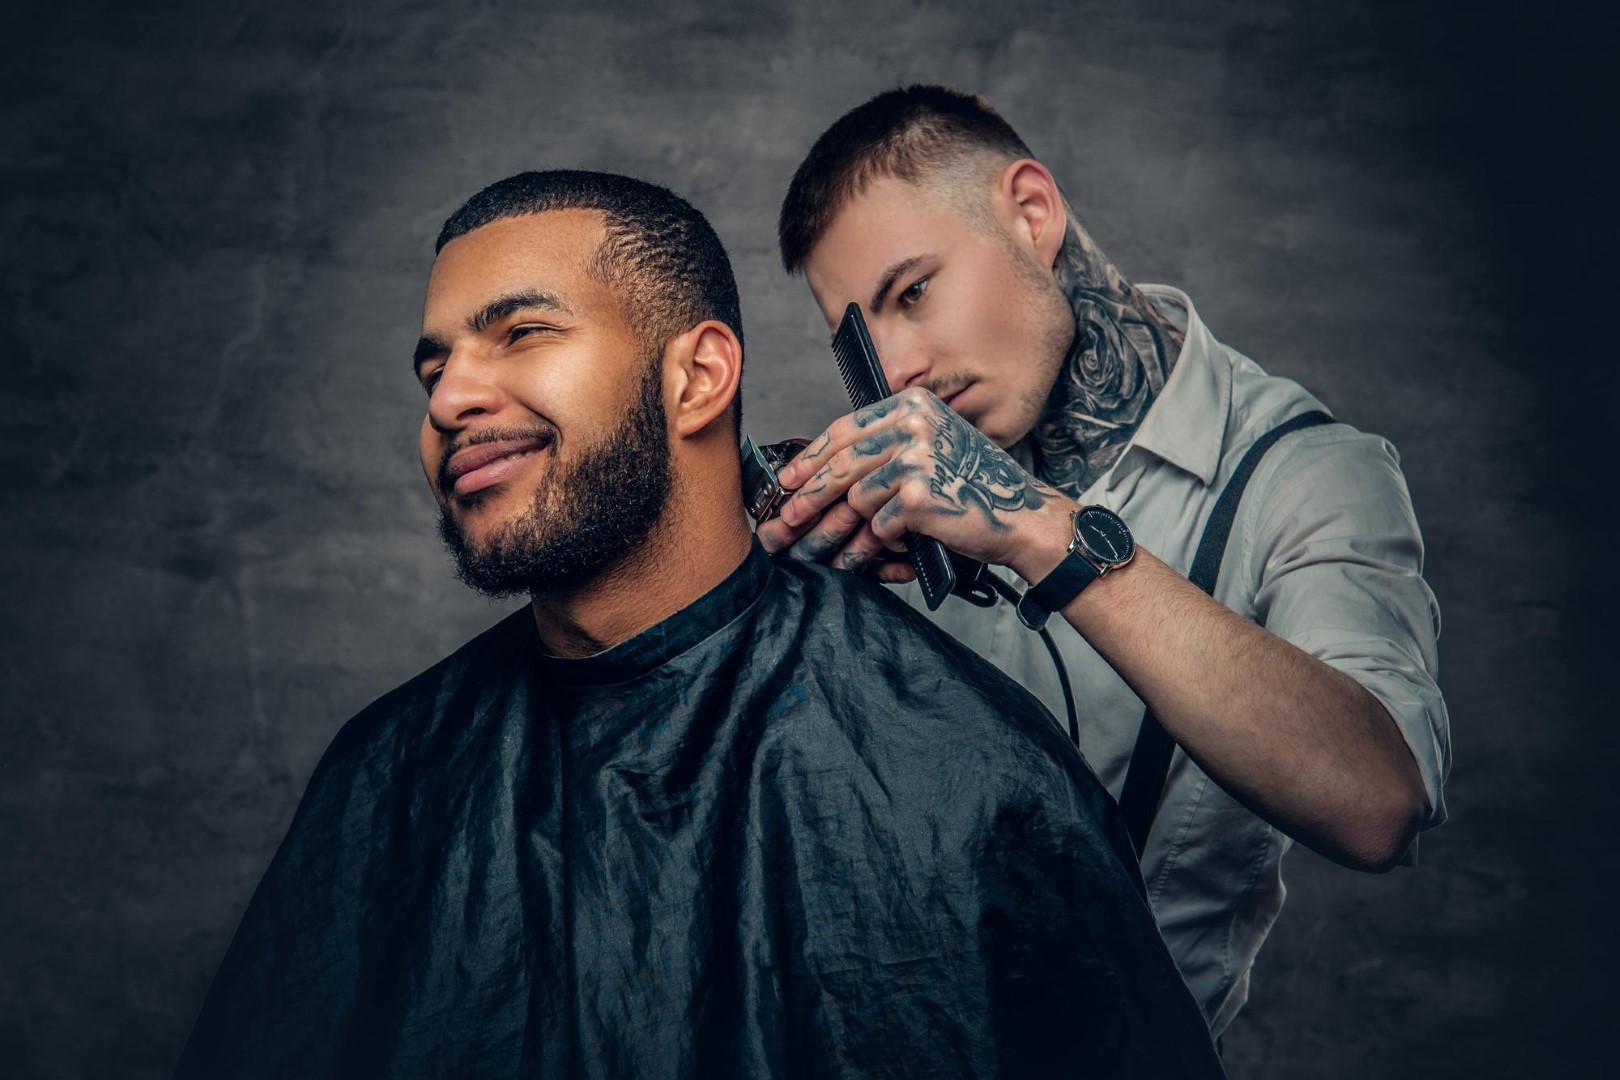 Ιστοσελίδα για Barber shops | One Page Websites